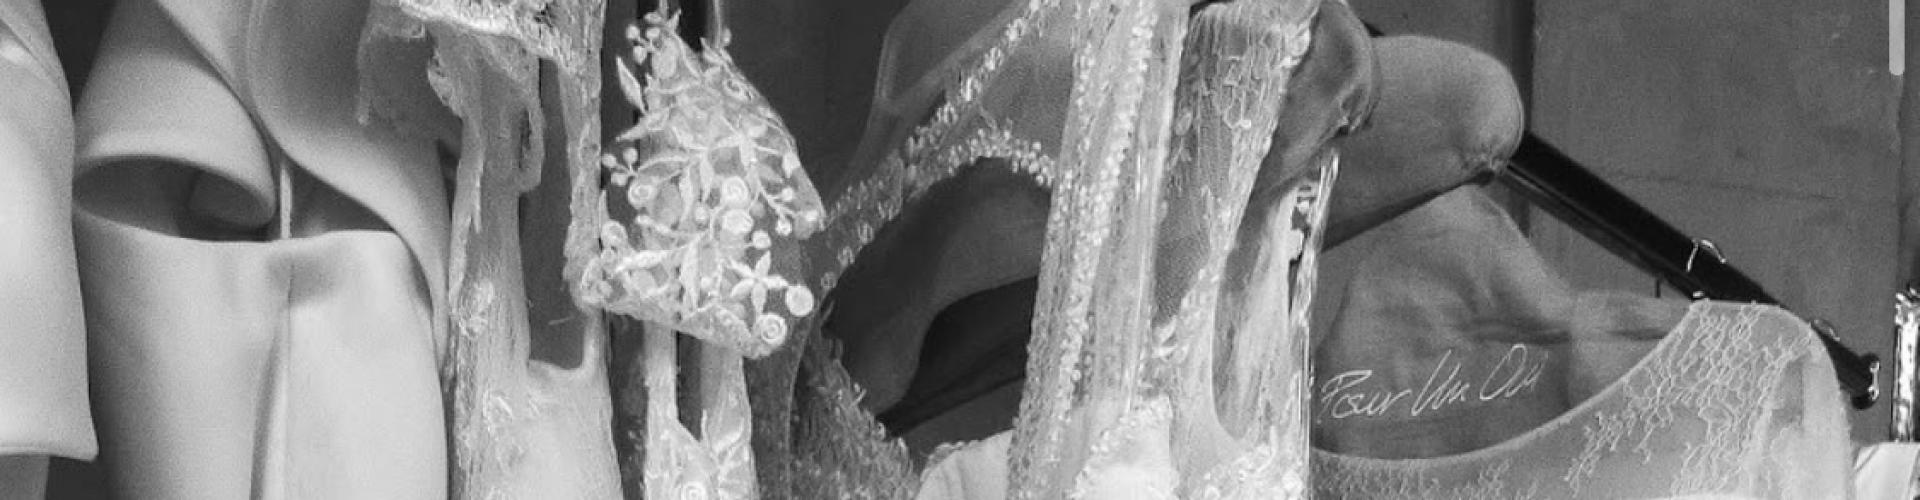 Cymbeline - Boutique de robes de mariées d’exception (Caen, Normandie) - Prestataire de Mariage en Normandie